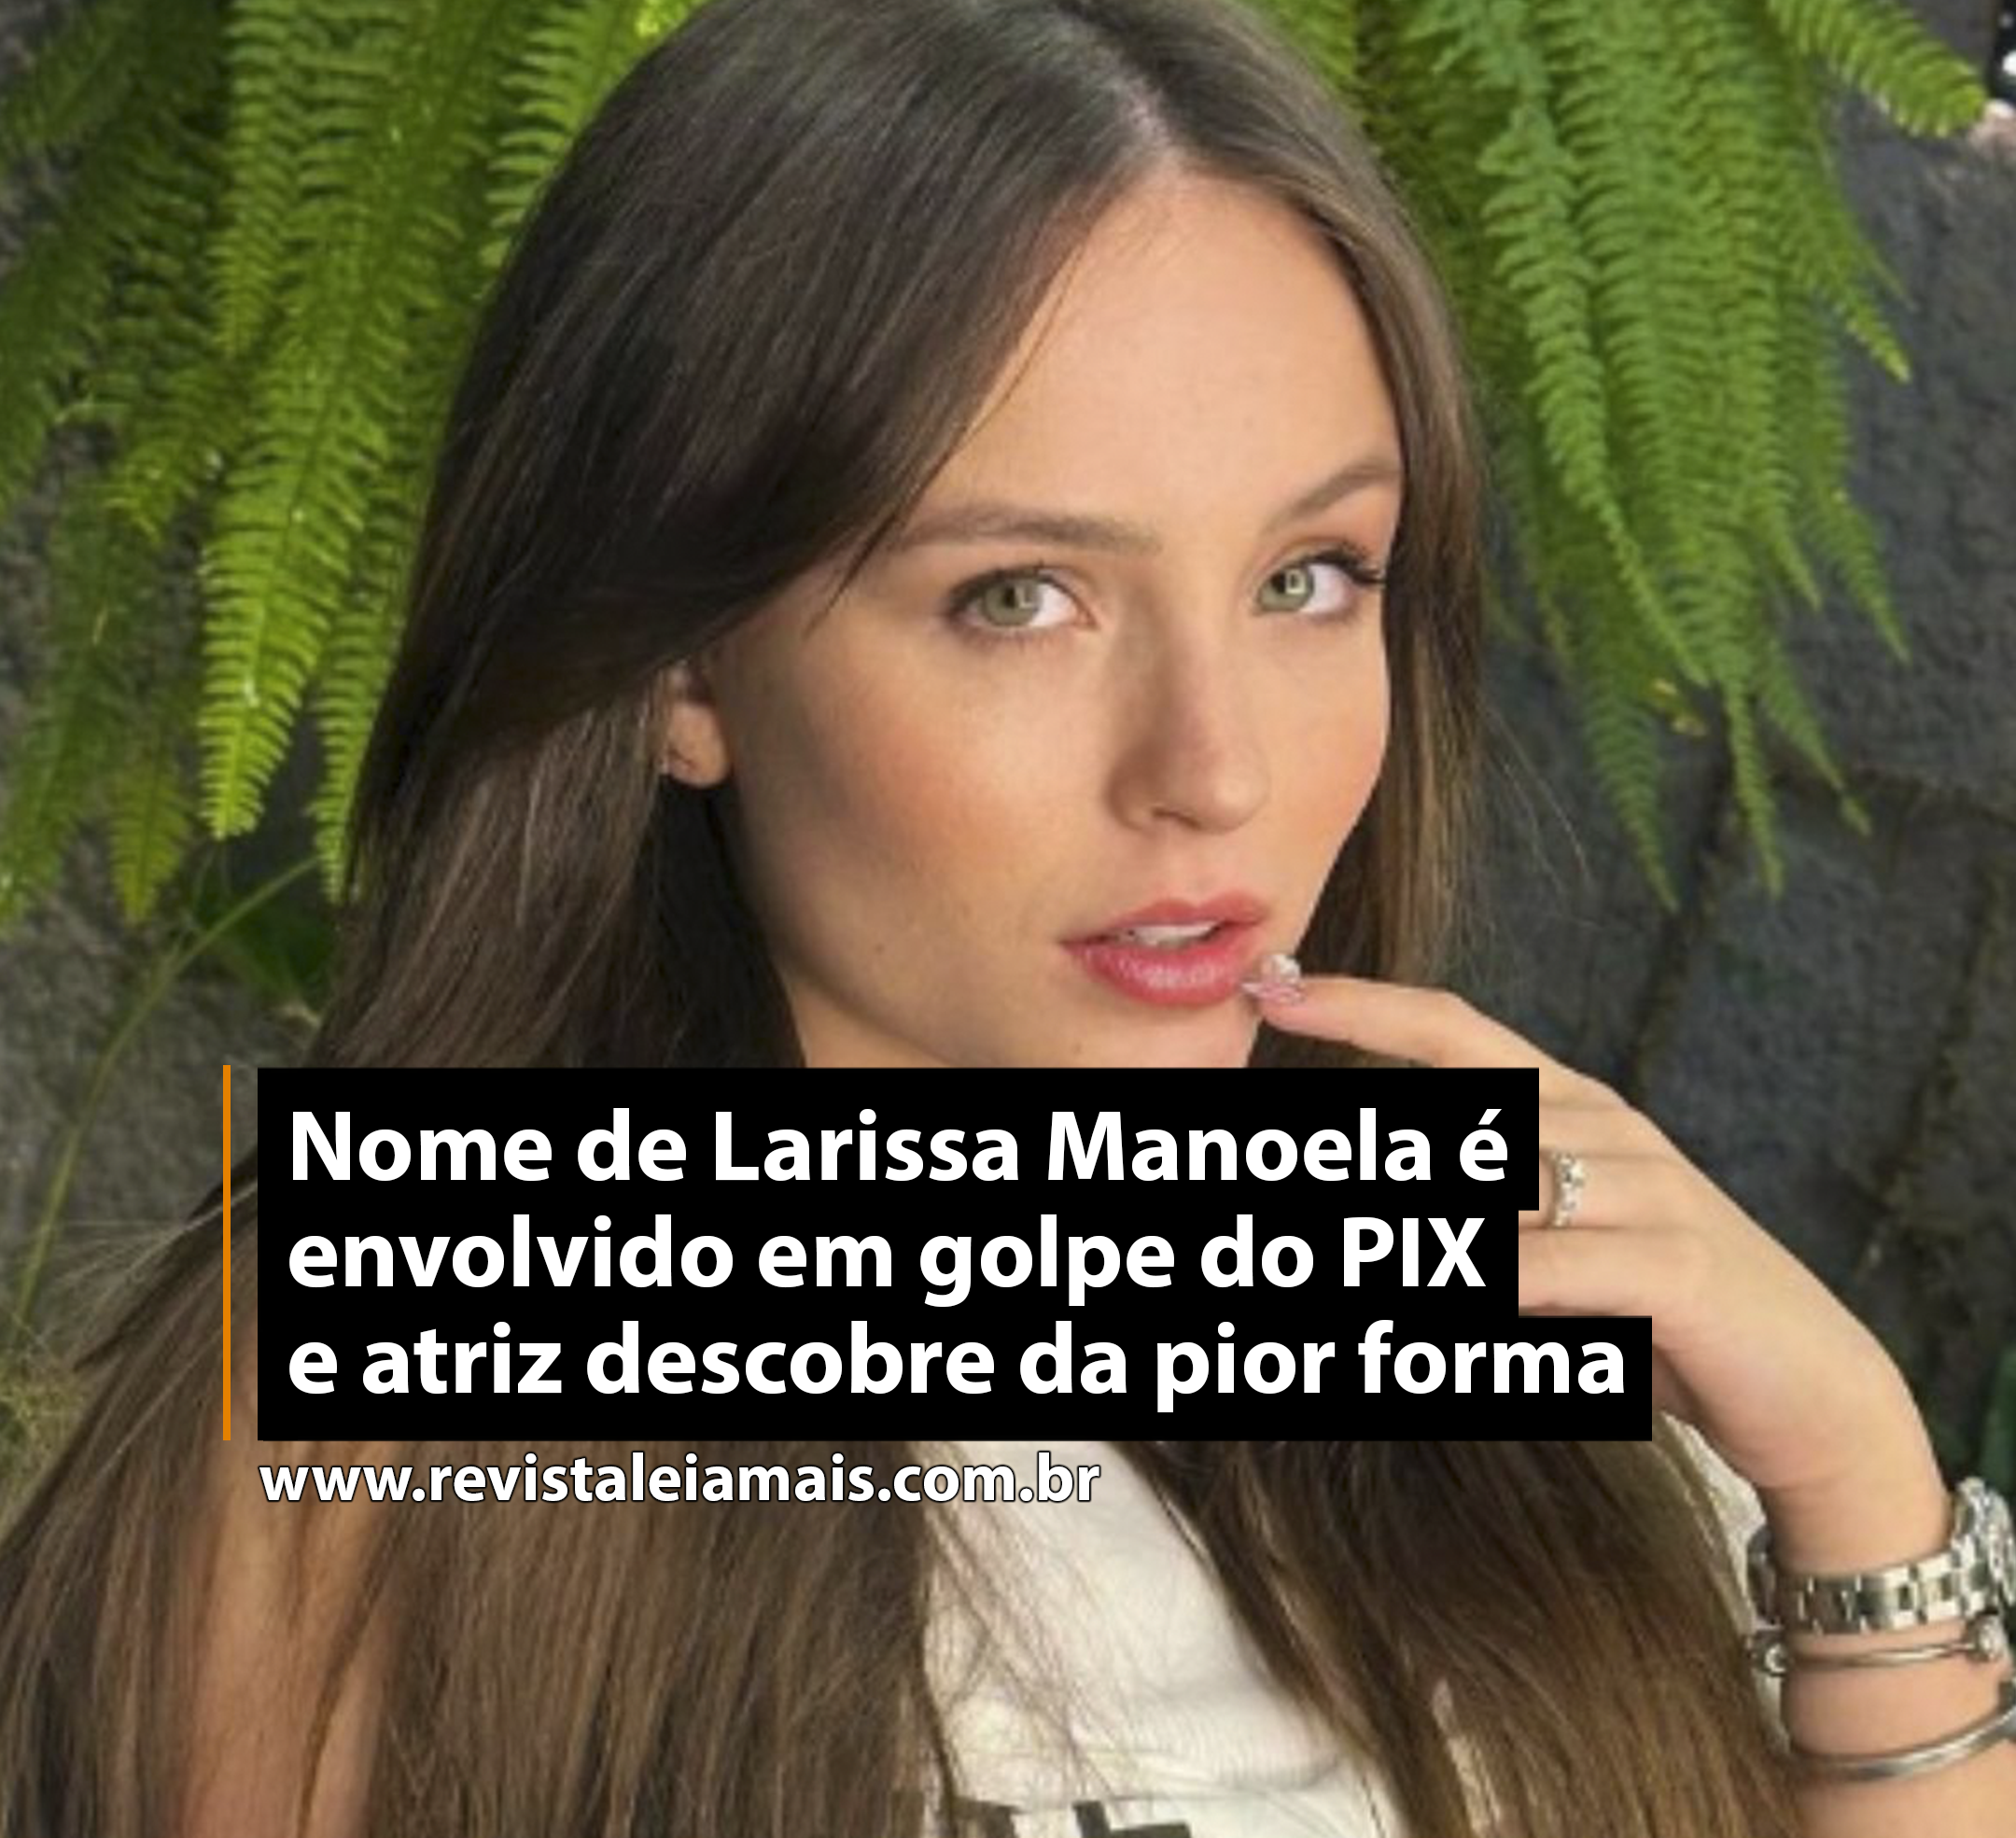 Nome de Larissa Manoela é envolvido em golpe do PIX e atriz descobre da pior forma